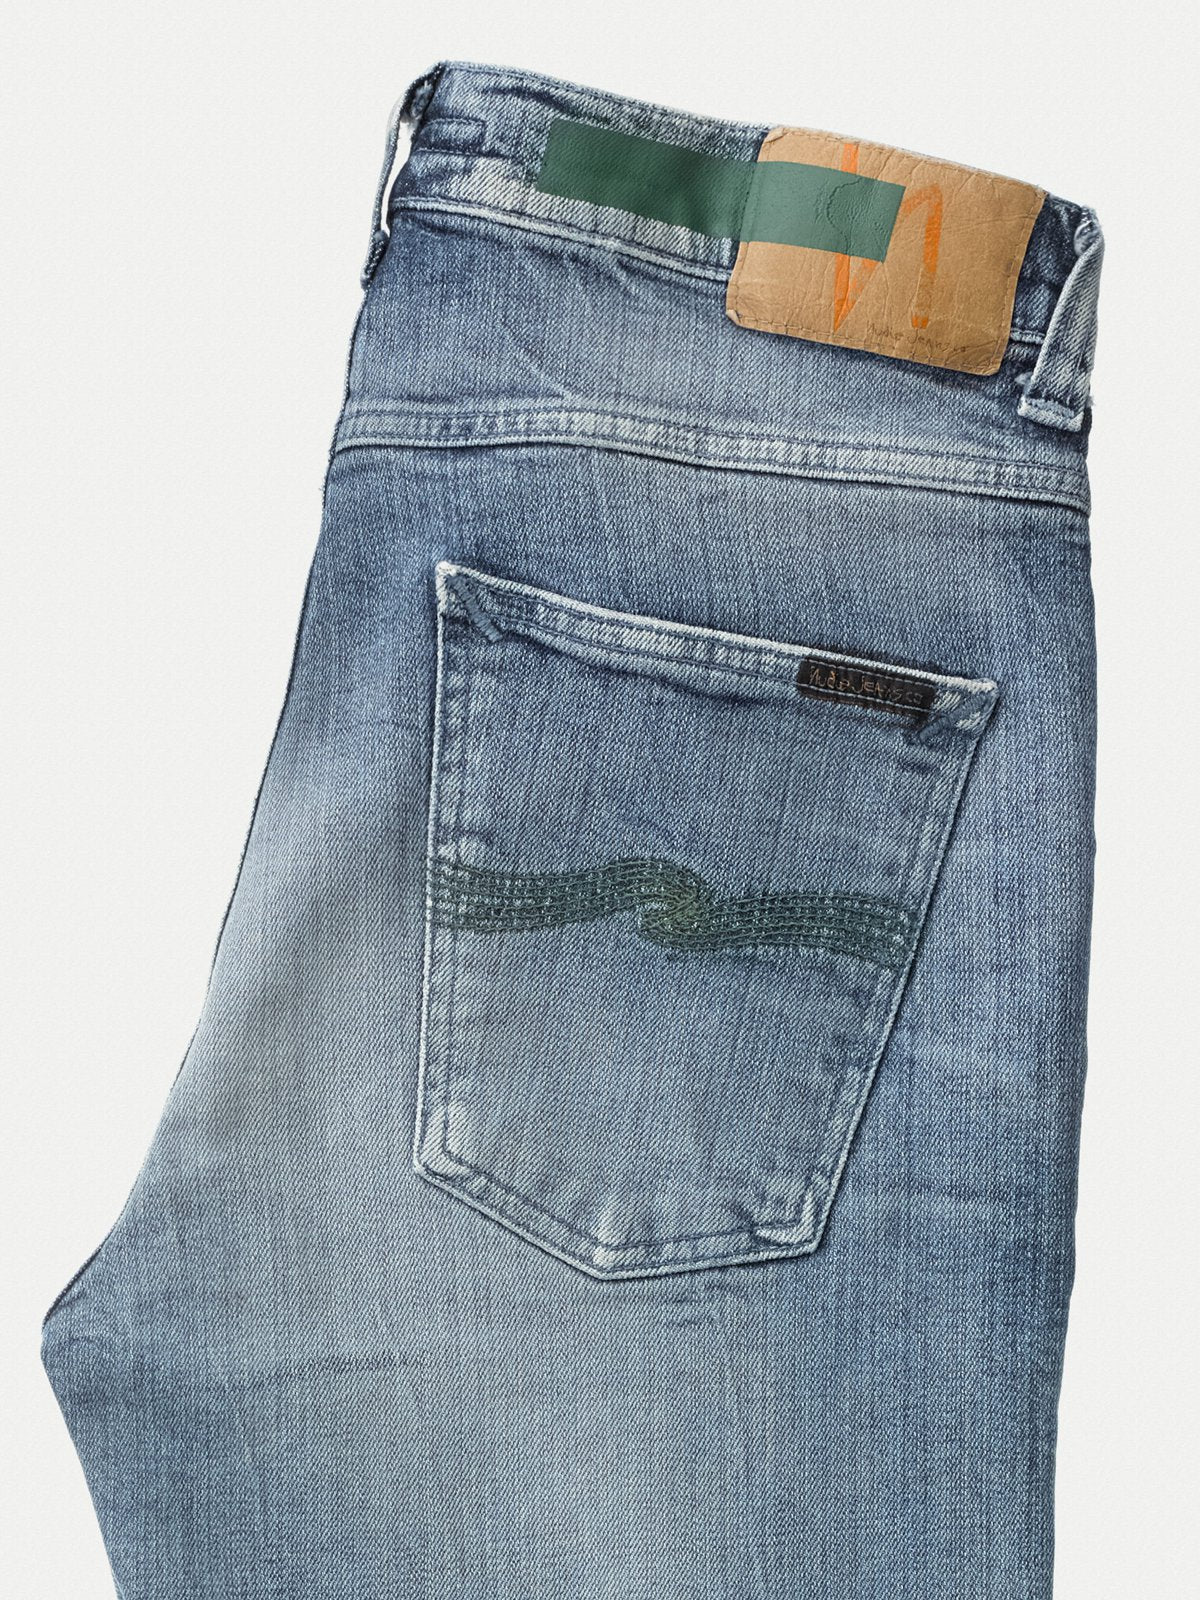 Kammerat majs bundet Nudie Jeans Lean Dean Worn In Green - Mildblend Supply Co